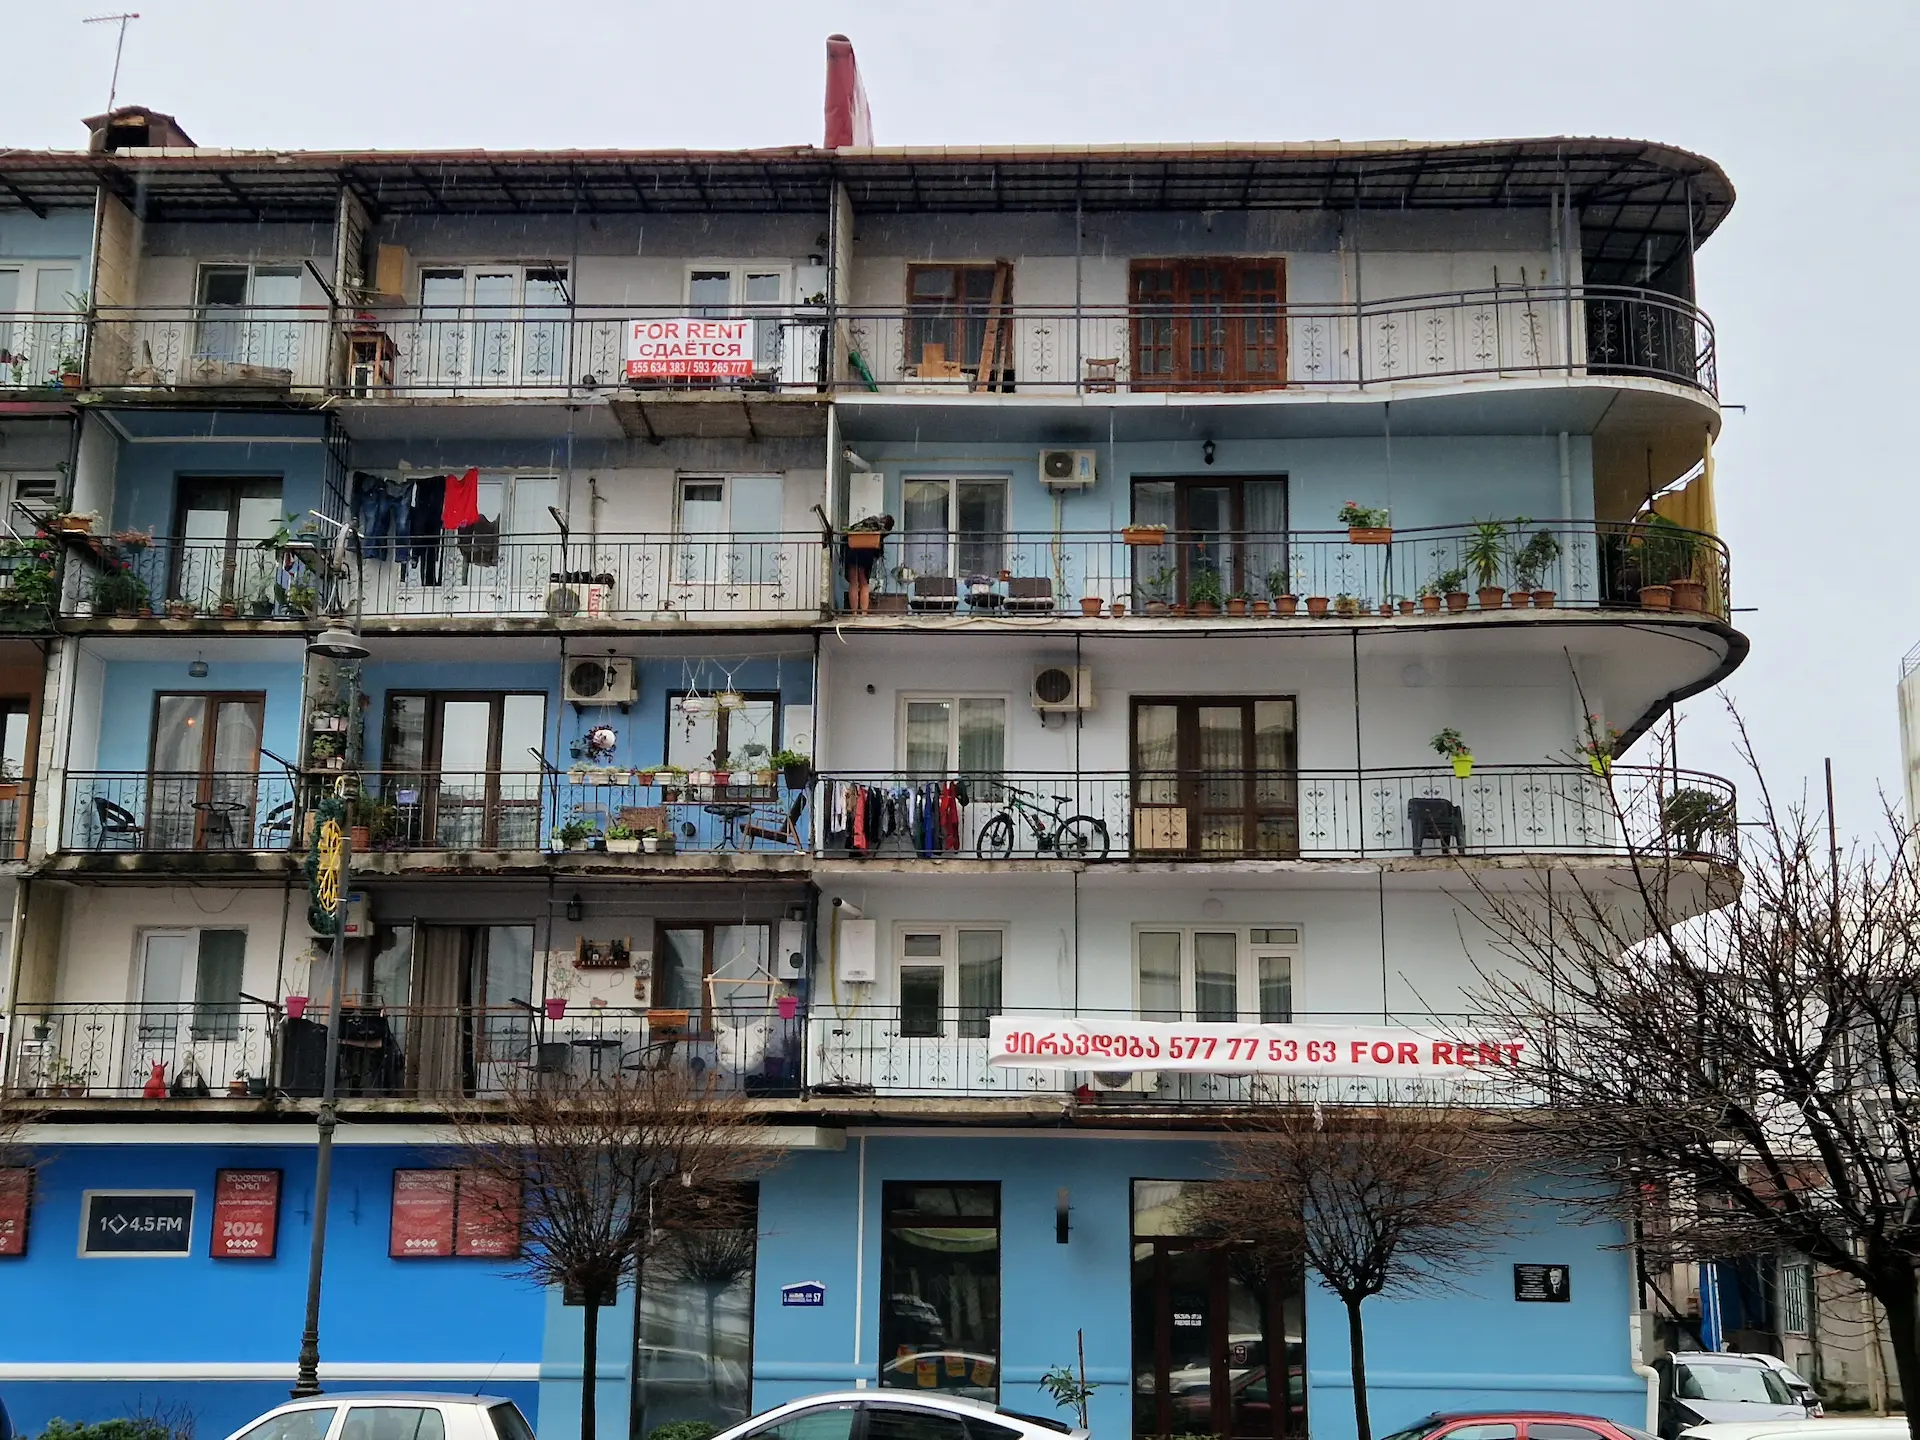 Un immeuble de quatre étages peint en différentes teintes de bleu, au coin arrondi, avec des balcons communiquants et couverts où sèchent des habits.